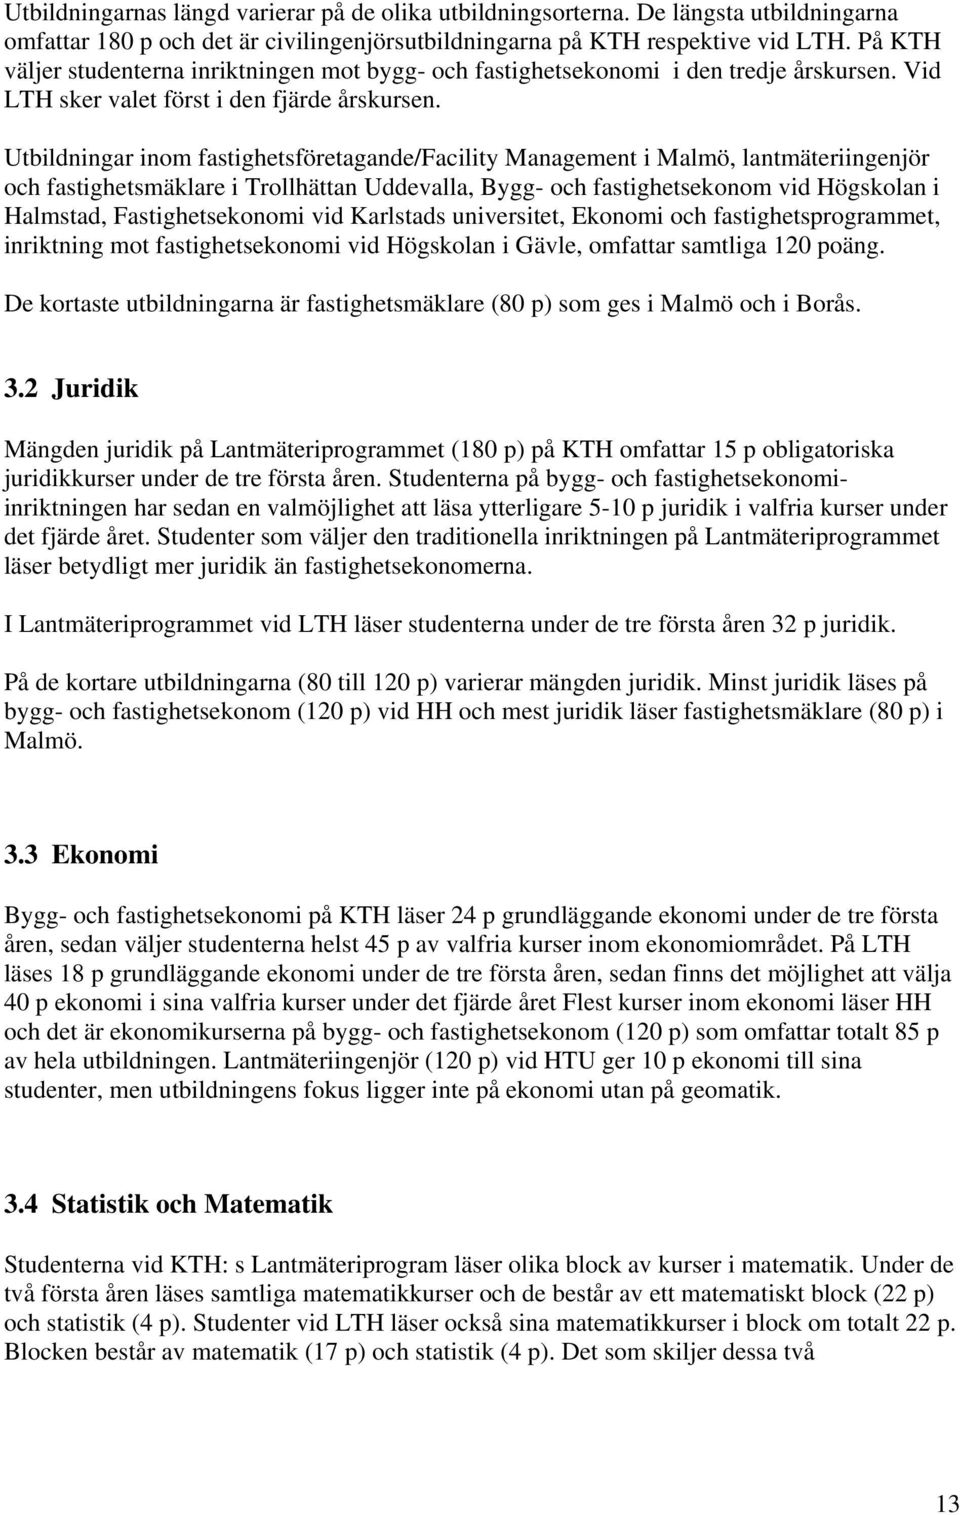 Utbildningar inom fastighetsföretagande/facility Management i Malmö, lantmäteriingenjör och fastighetsmäklare i Trollhättan Uddevalla, Bygg- och fastighetsekonom vid Högskolan i Halmstad,